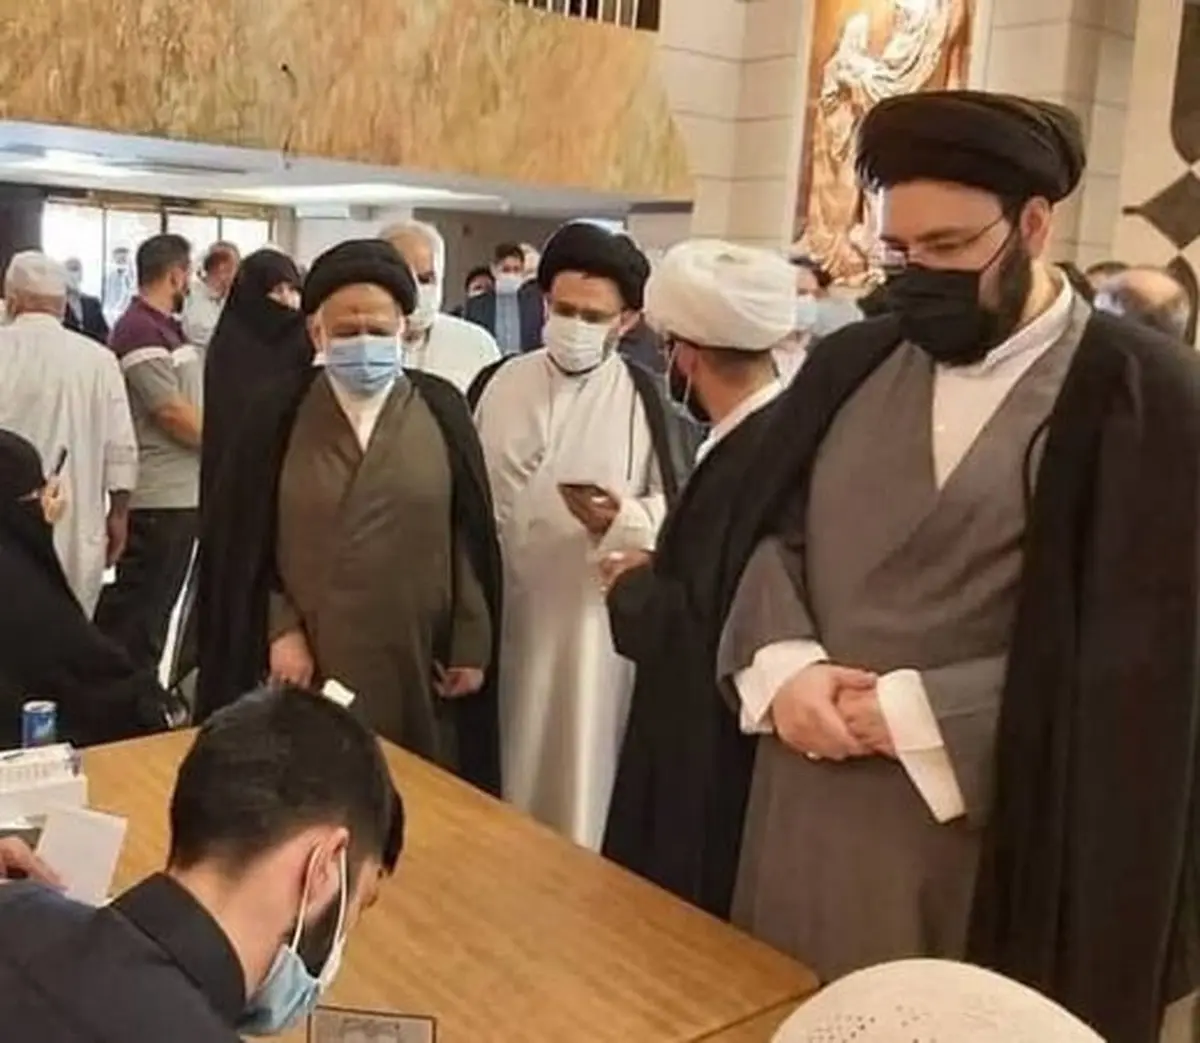 سیدعلی خمینی در نجف رأی خود را به صندوق انداخت